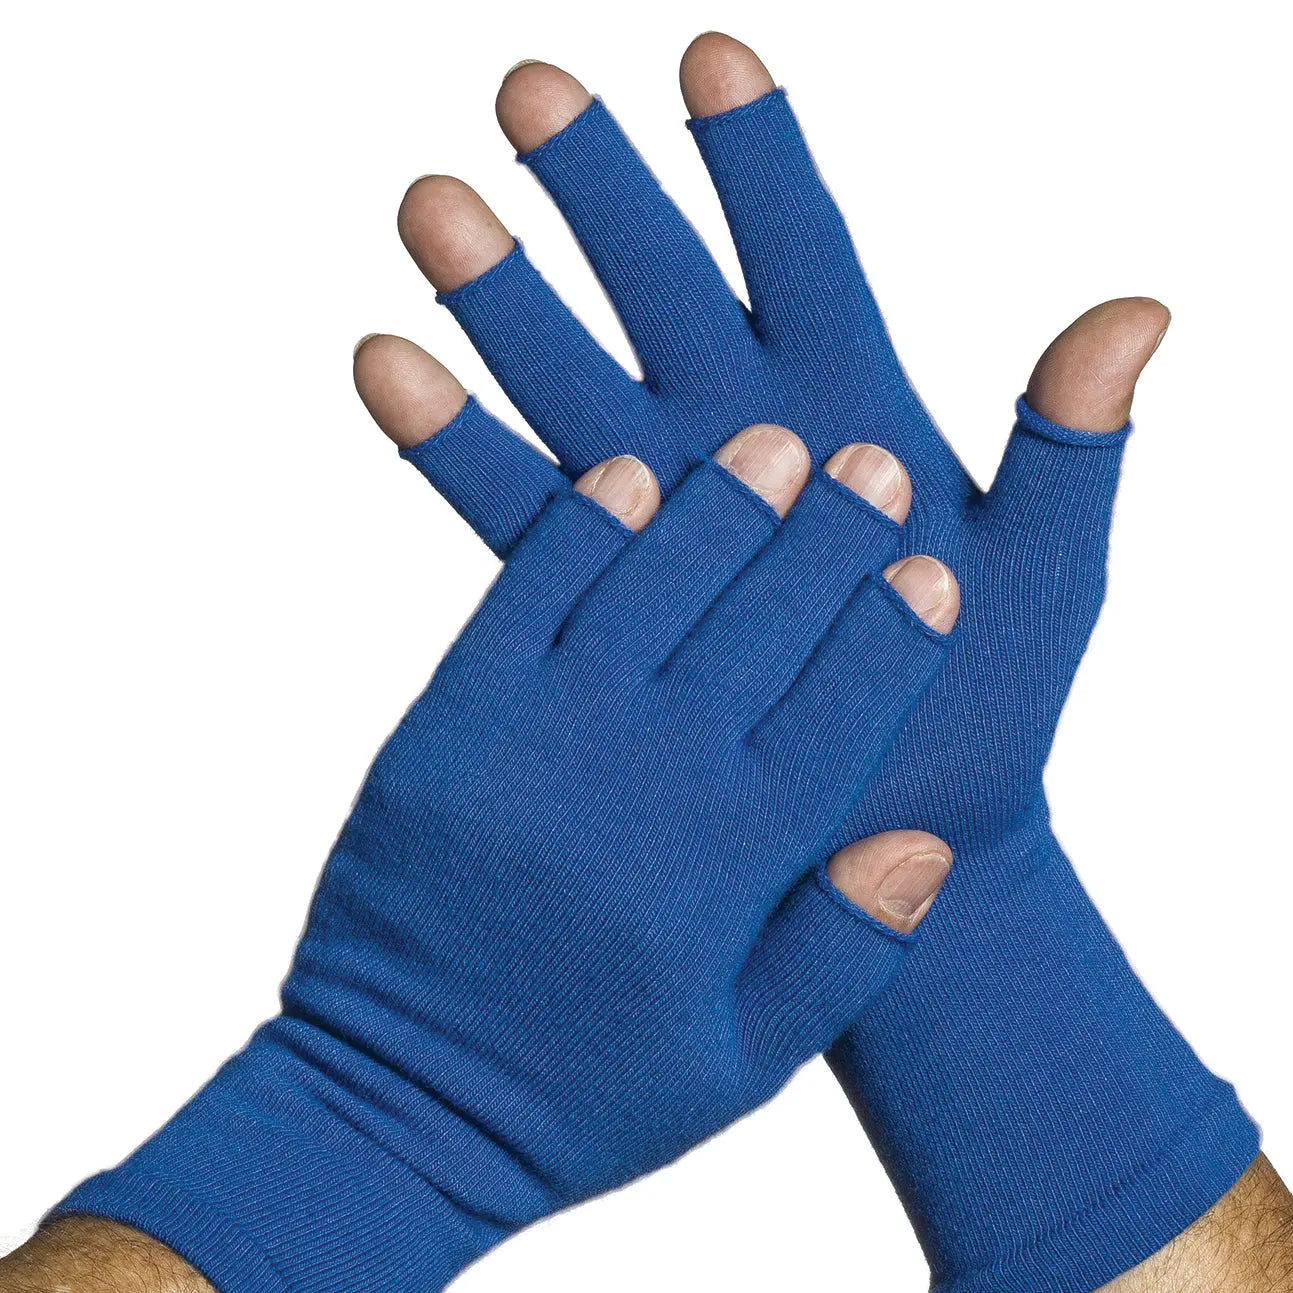 3/4 Fingerless Gloves - Keep hands warm (pair) Limbkeepers